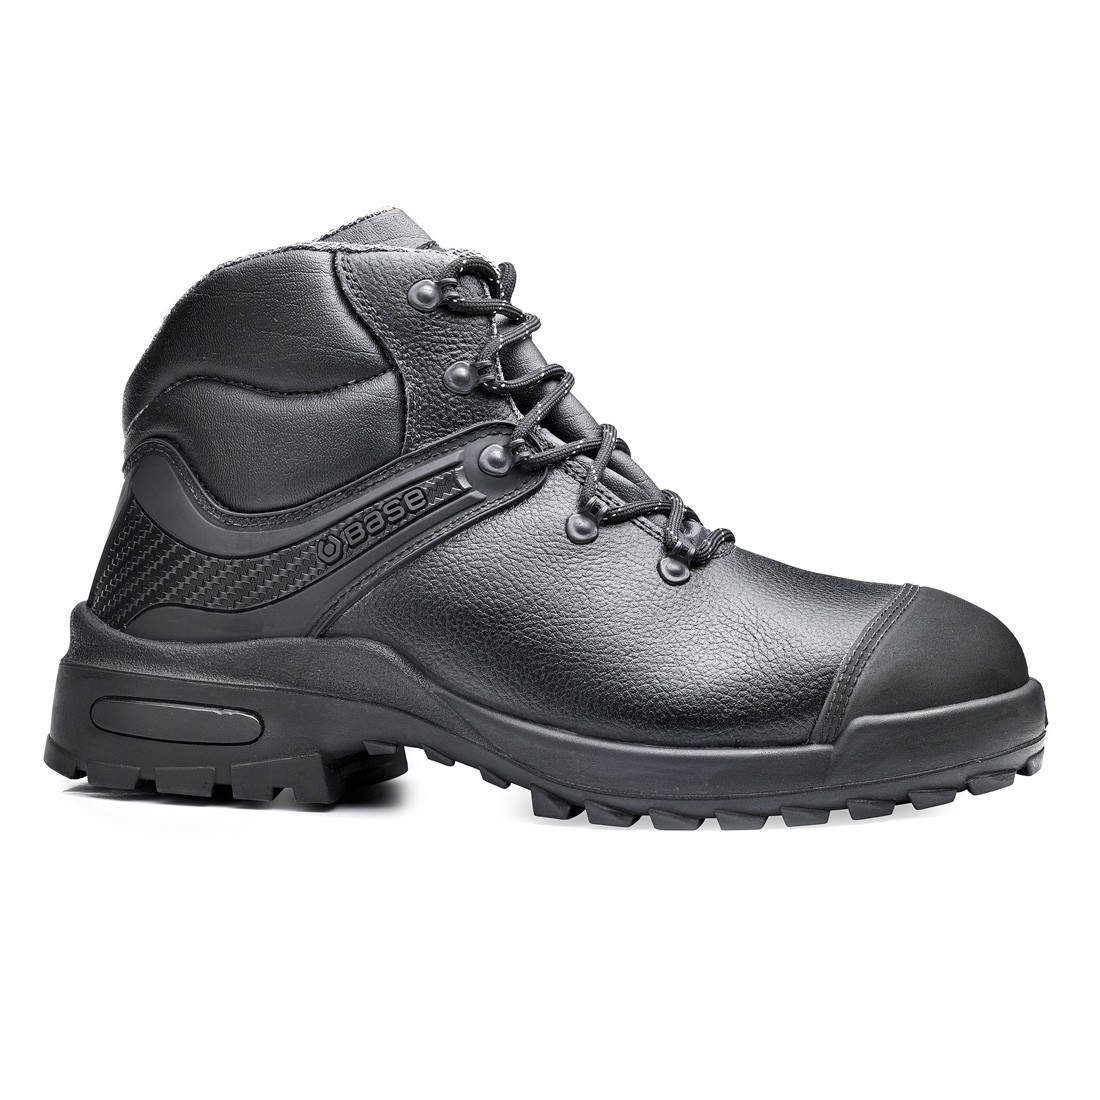 Morrison Boot S3 SRC - Les chaussures de protection